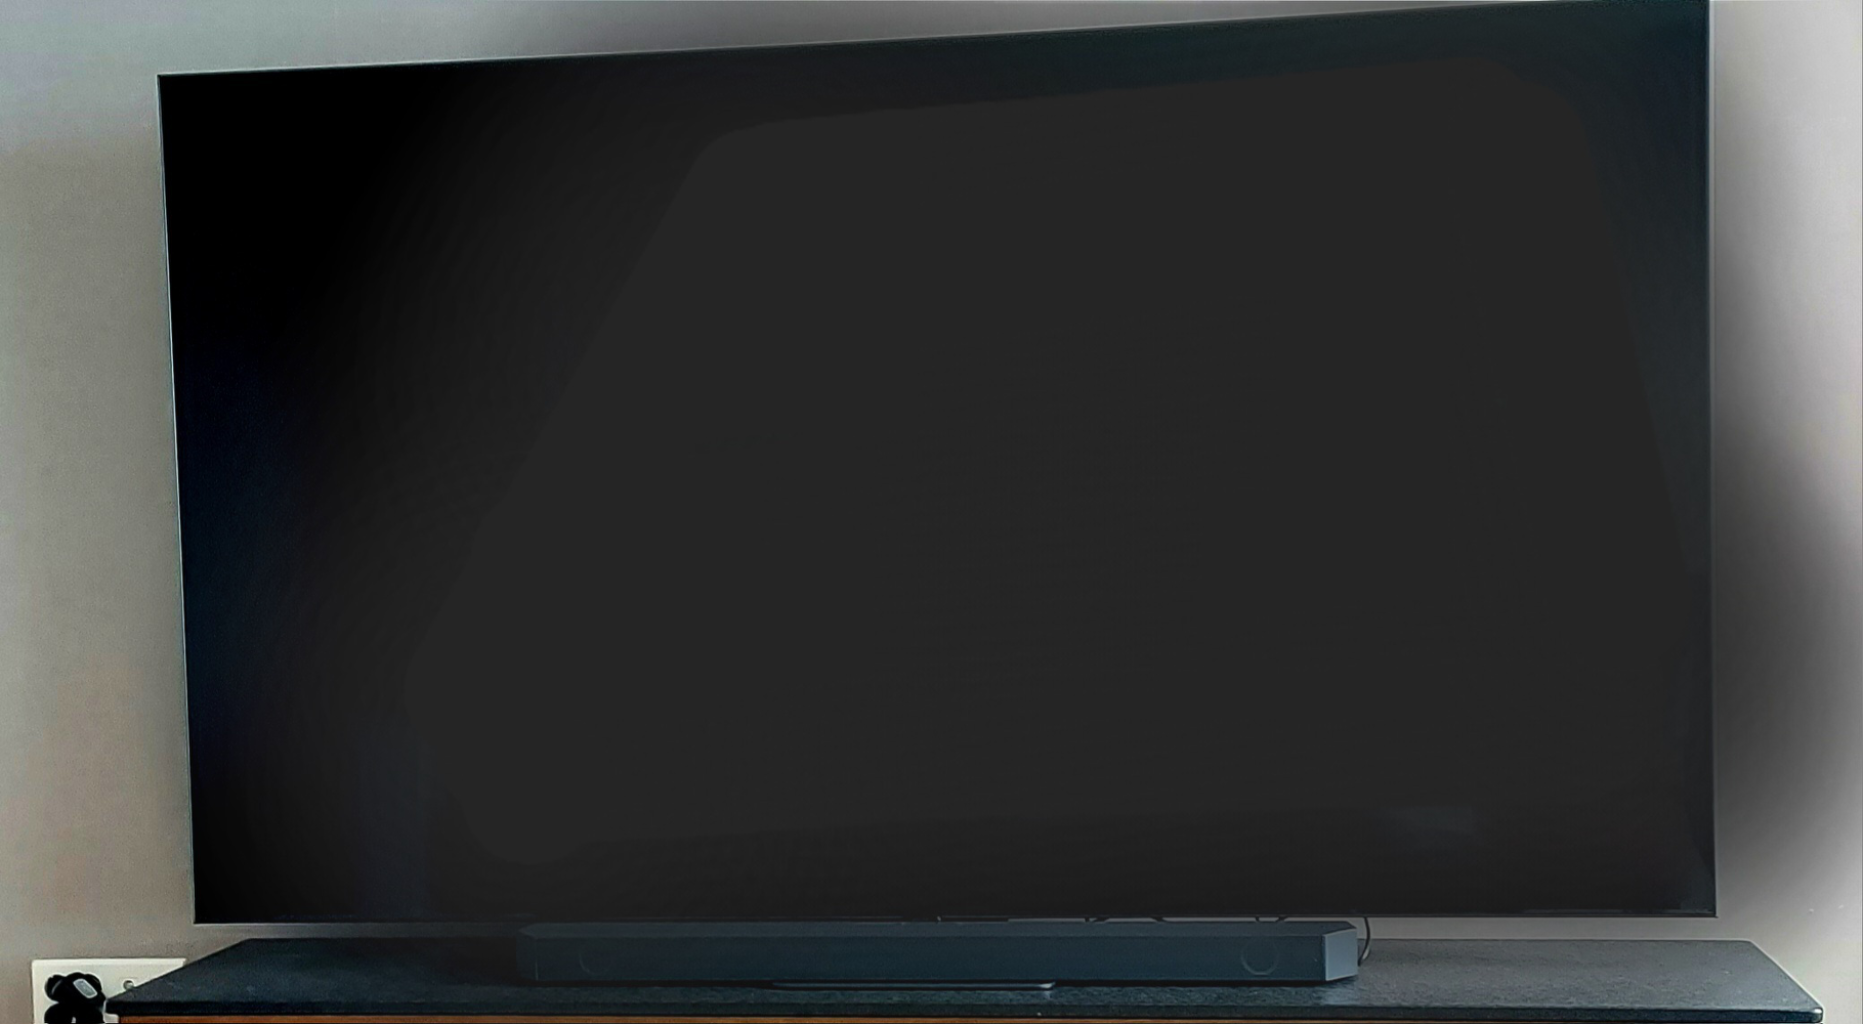 삼성QLED 4K 최근설치상품 새상품급 85인치TV